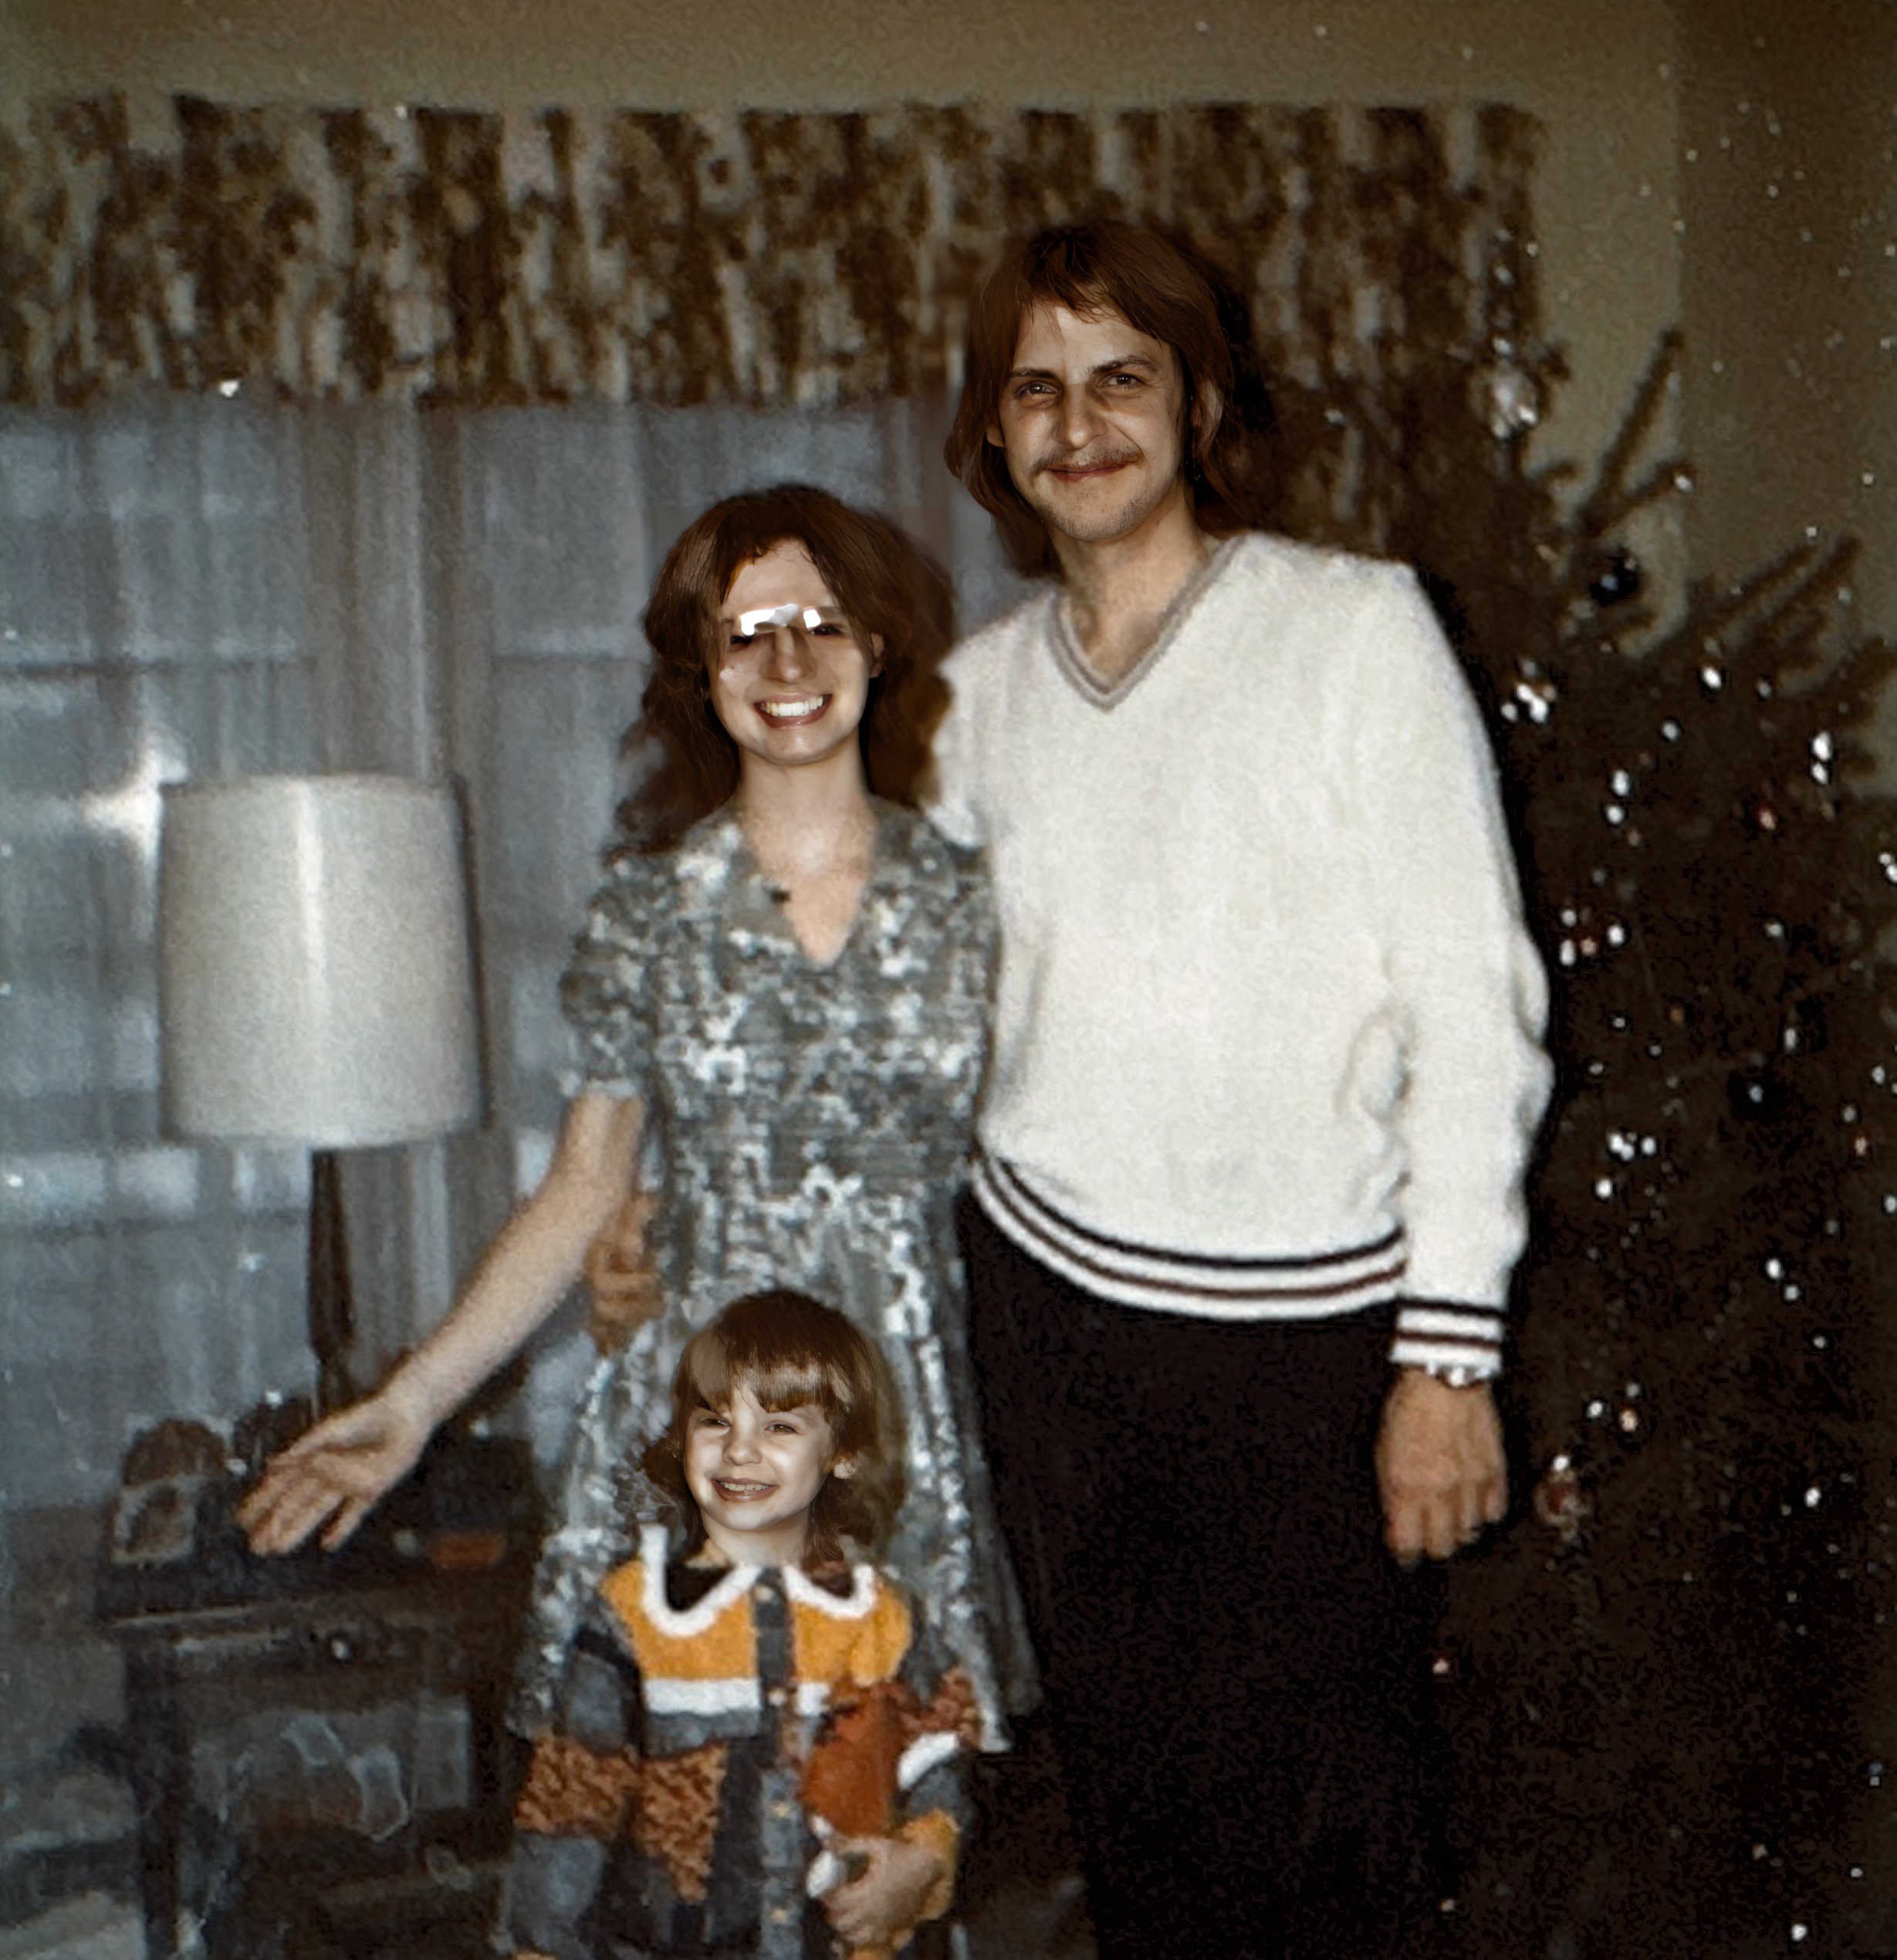 Christmas 1975